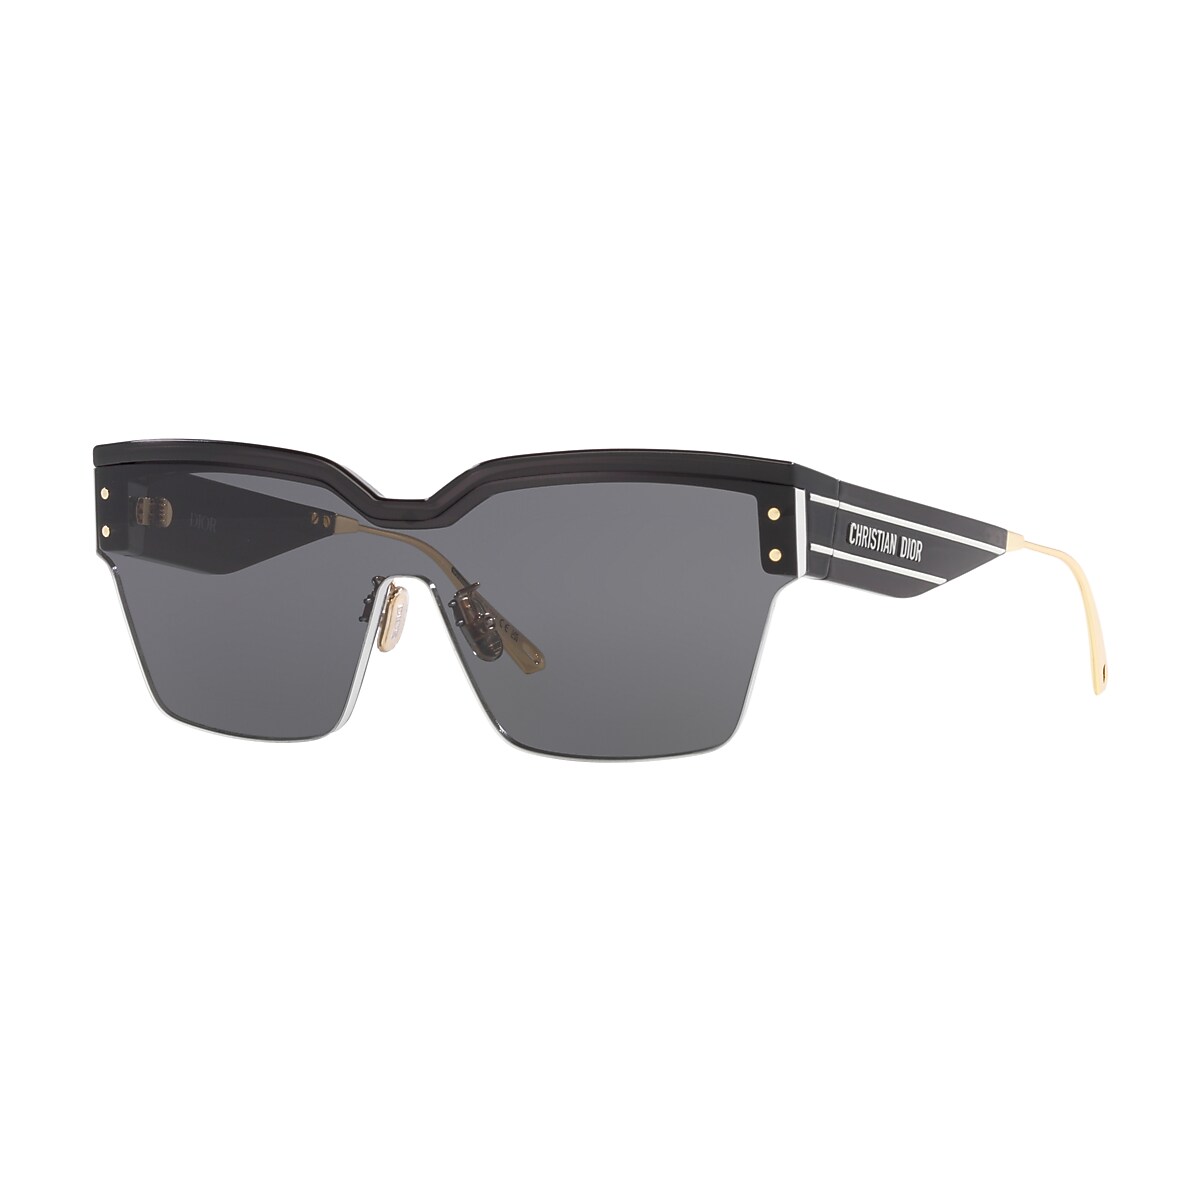 Dior - CD Diamond S4U Gray and Beige Mirrored Square Sunglasses - Men